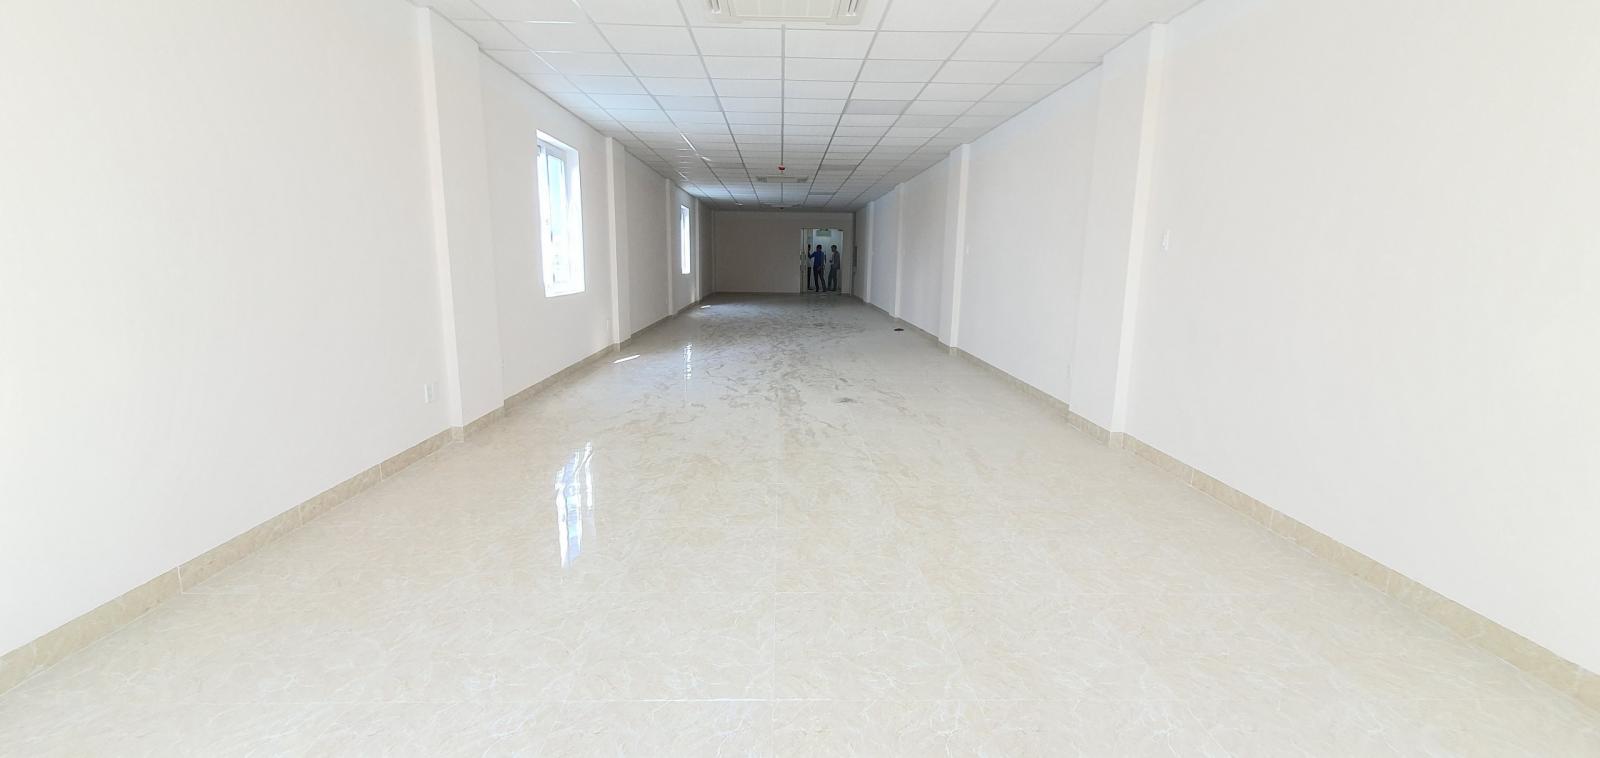 Cho thuê văn phòng tại Xô Viết Nghệ Tĩnh, quận Hải Châu chỉ từ 220k/m2